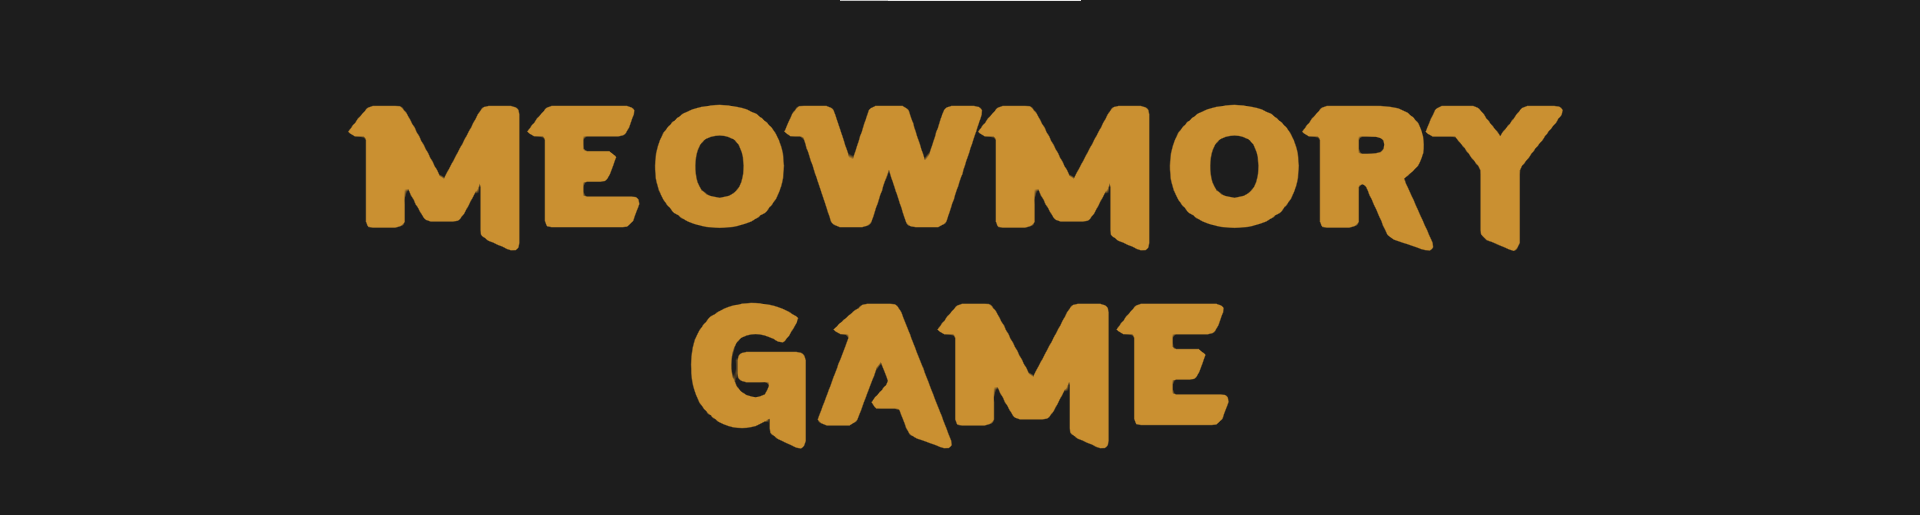 Meowmory Game